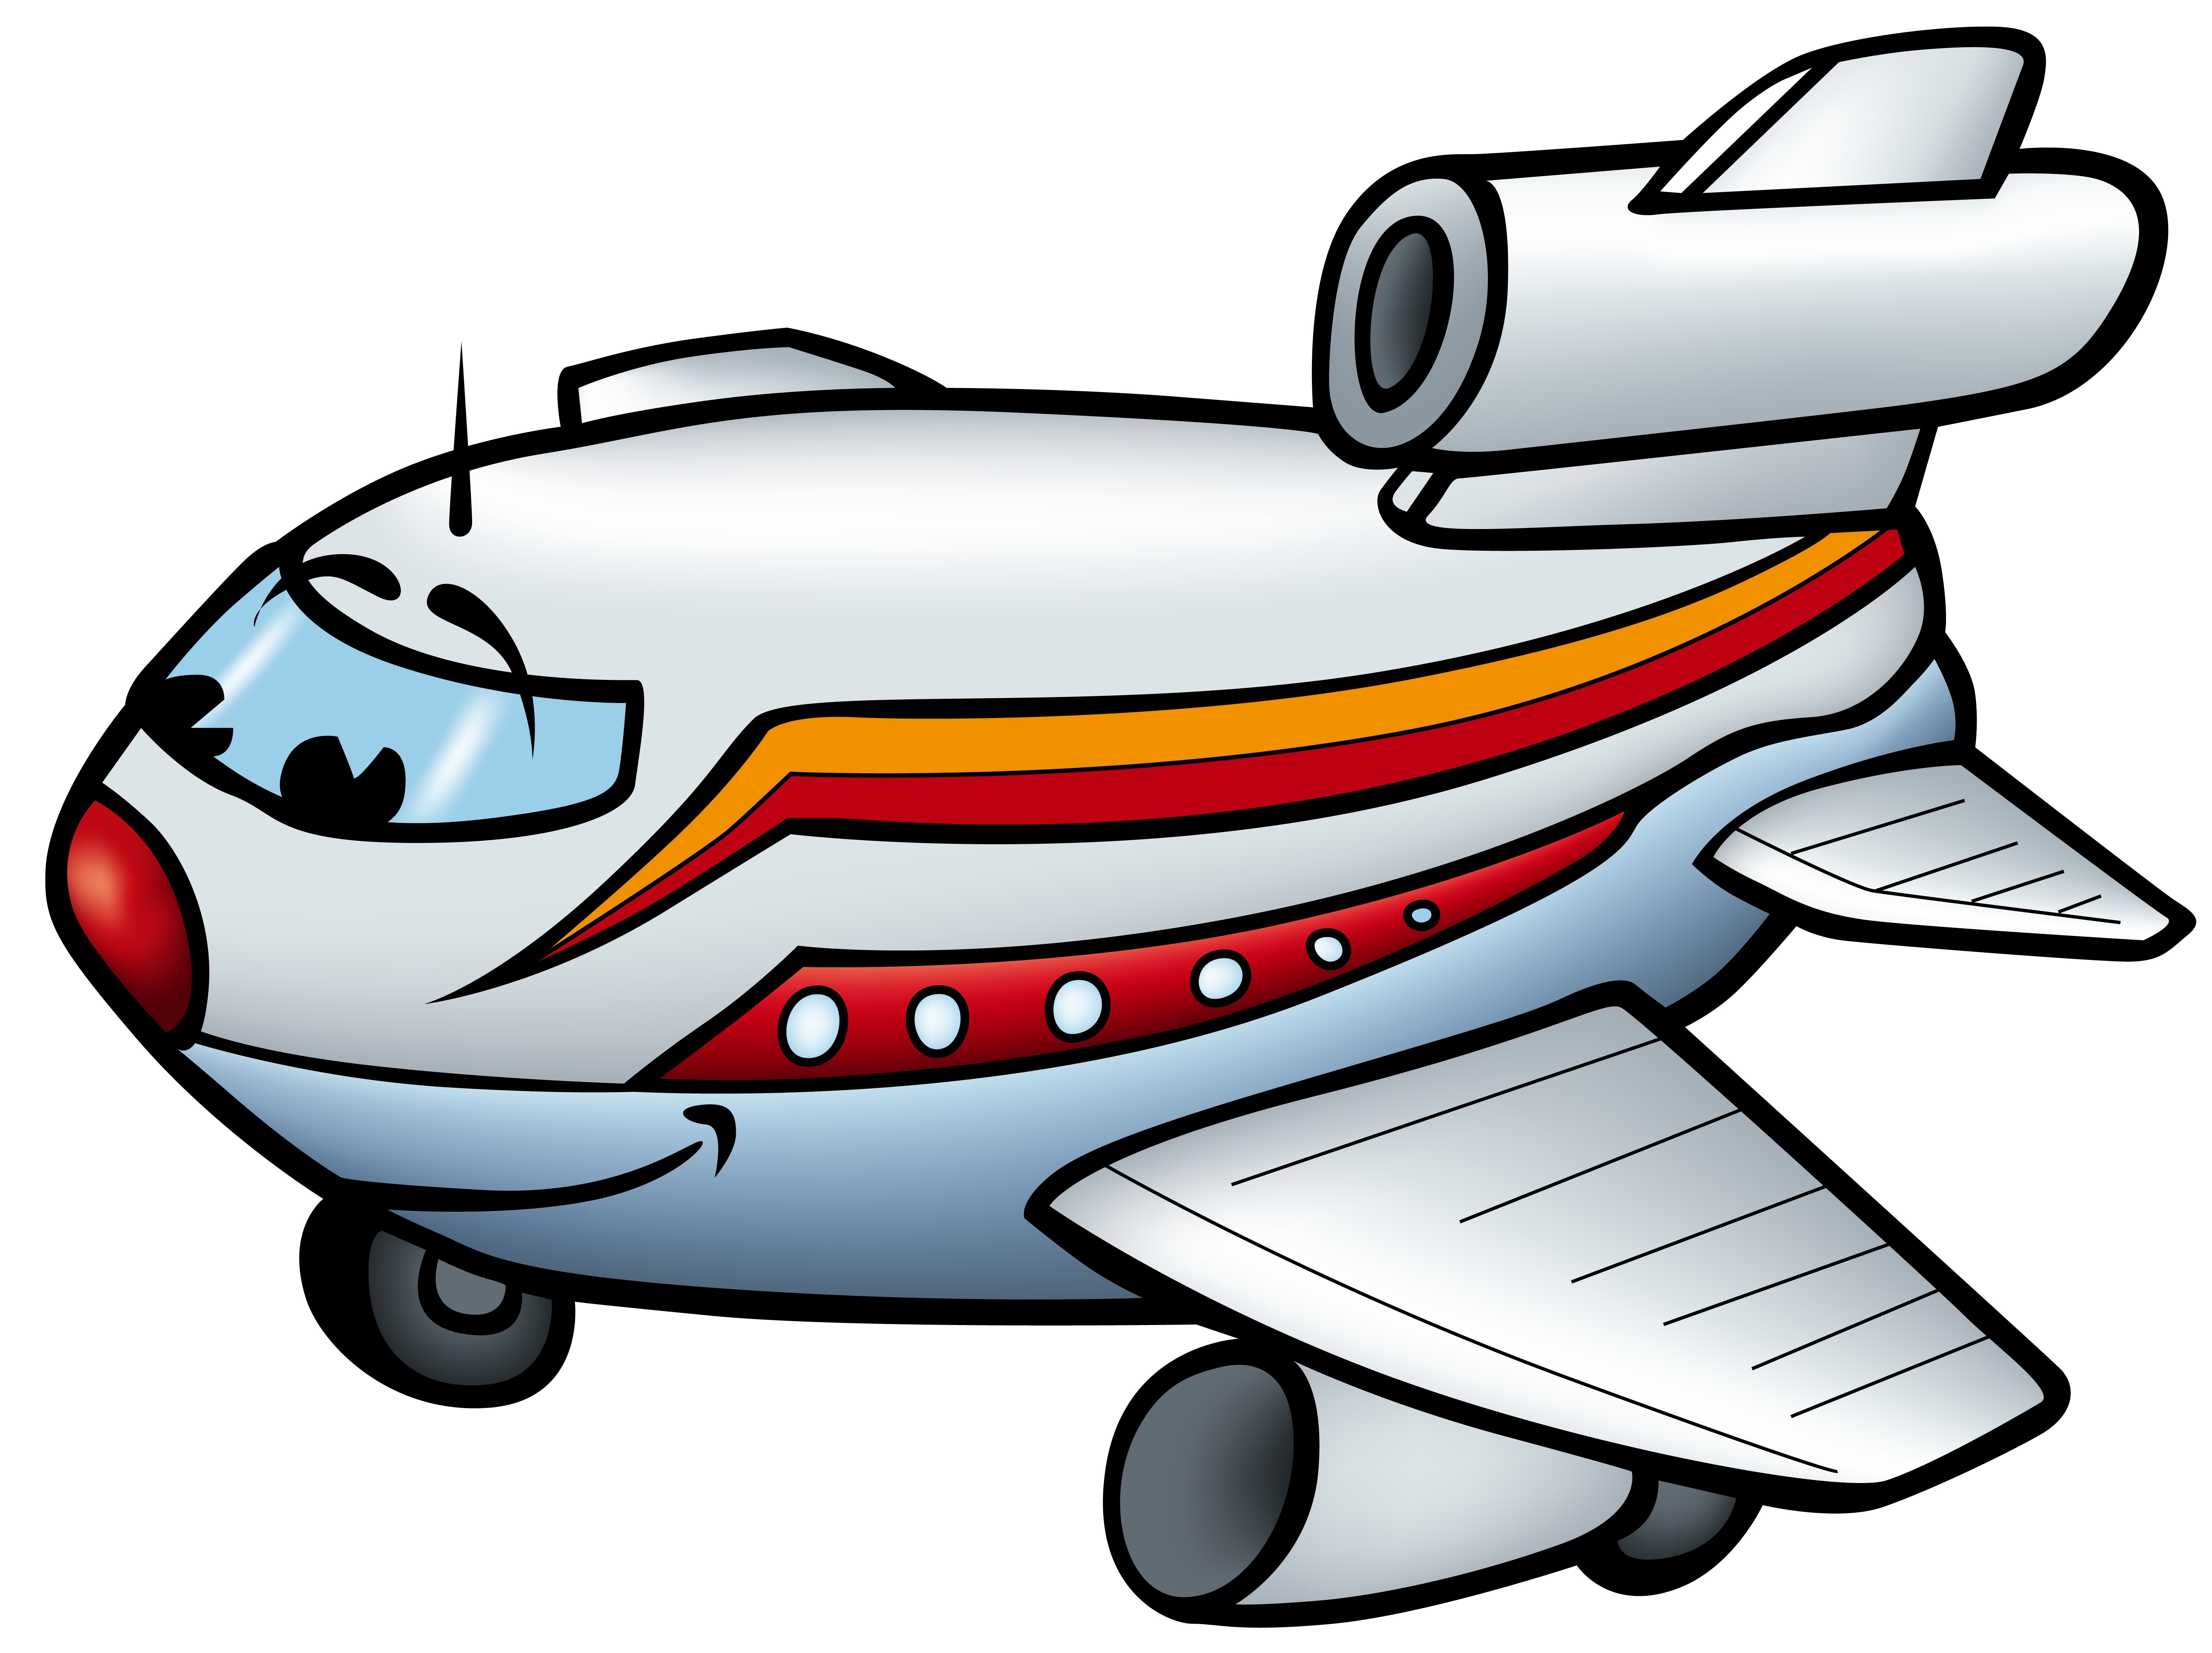 Free Aeroplane Cartoon, Download Free Aeroplane Cartoon png images